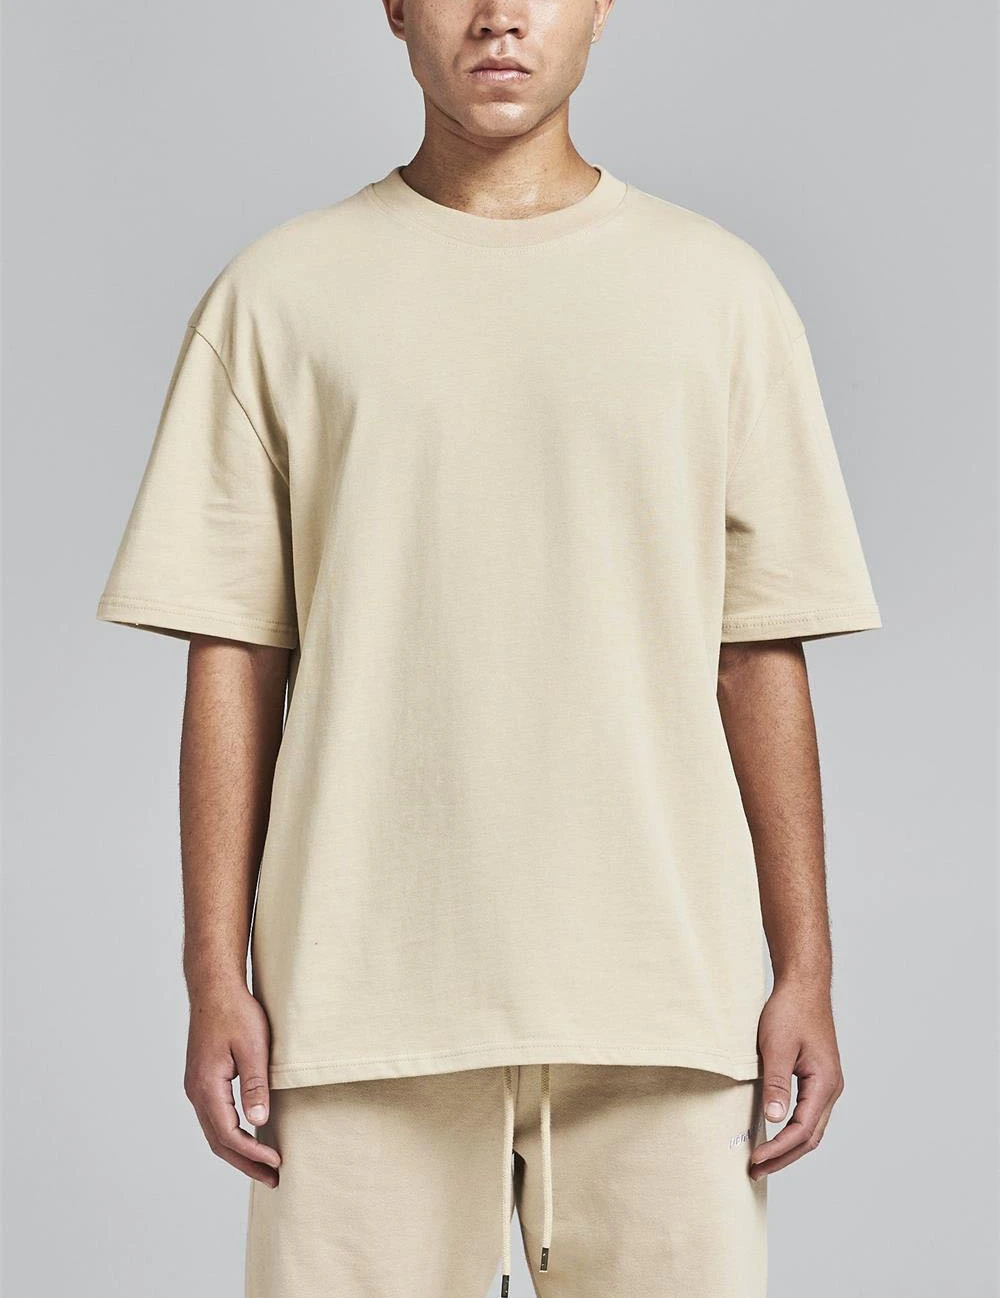 Wholesale Plain 250 300gsm T Shirt For Men Custom Oversized Blank Heavy ...